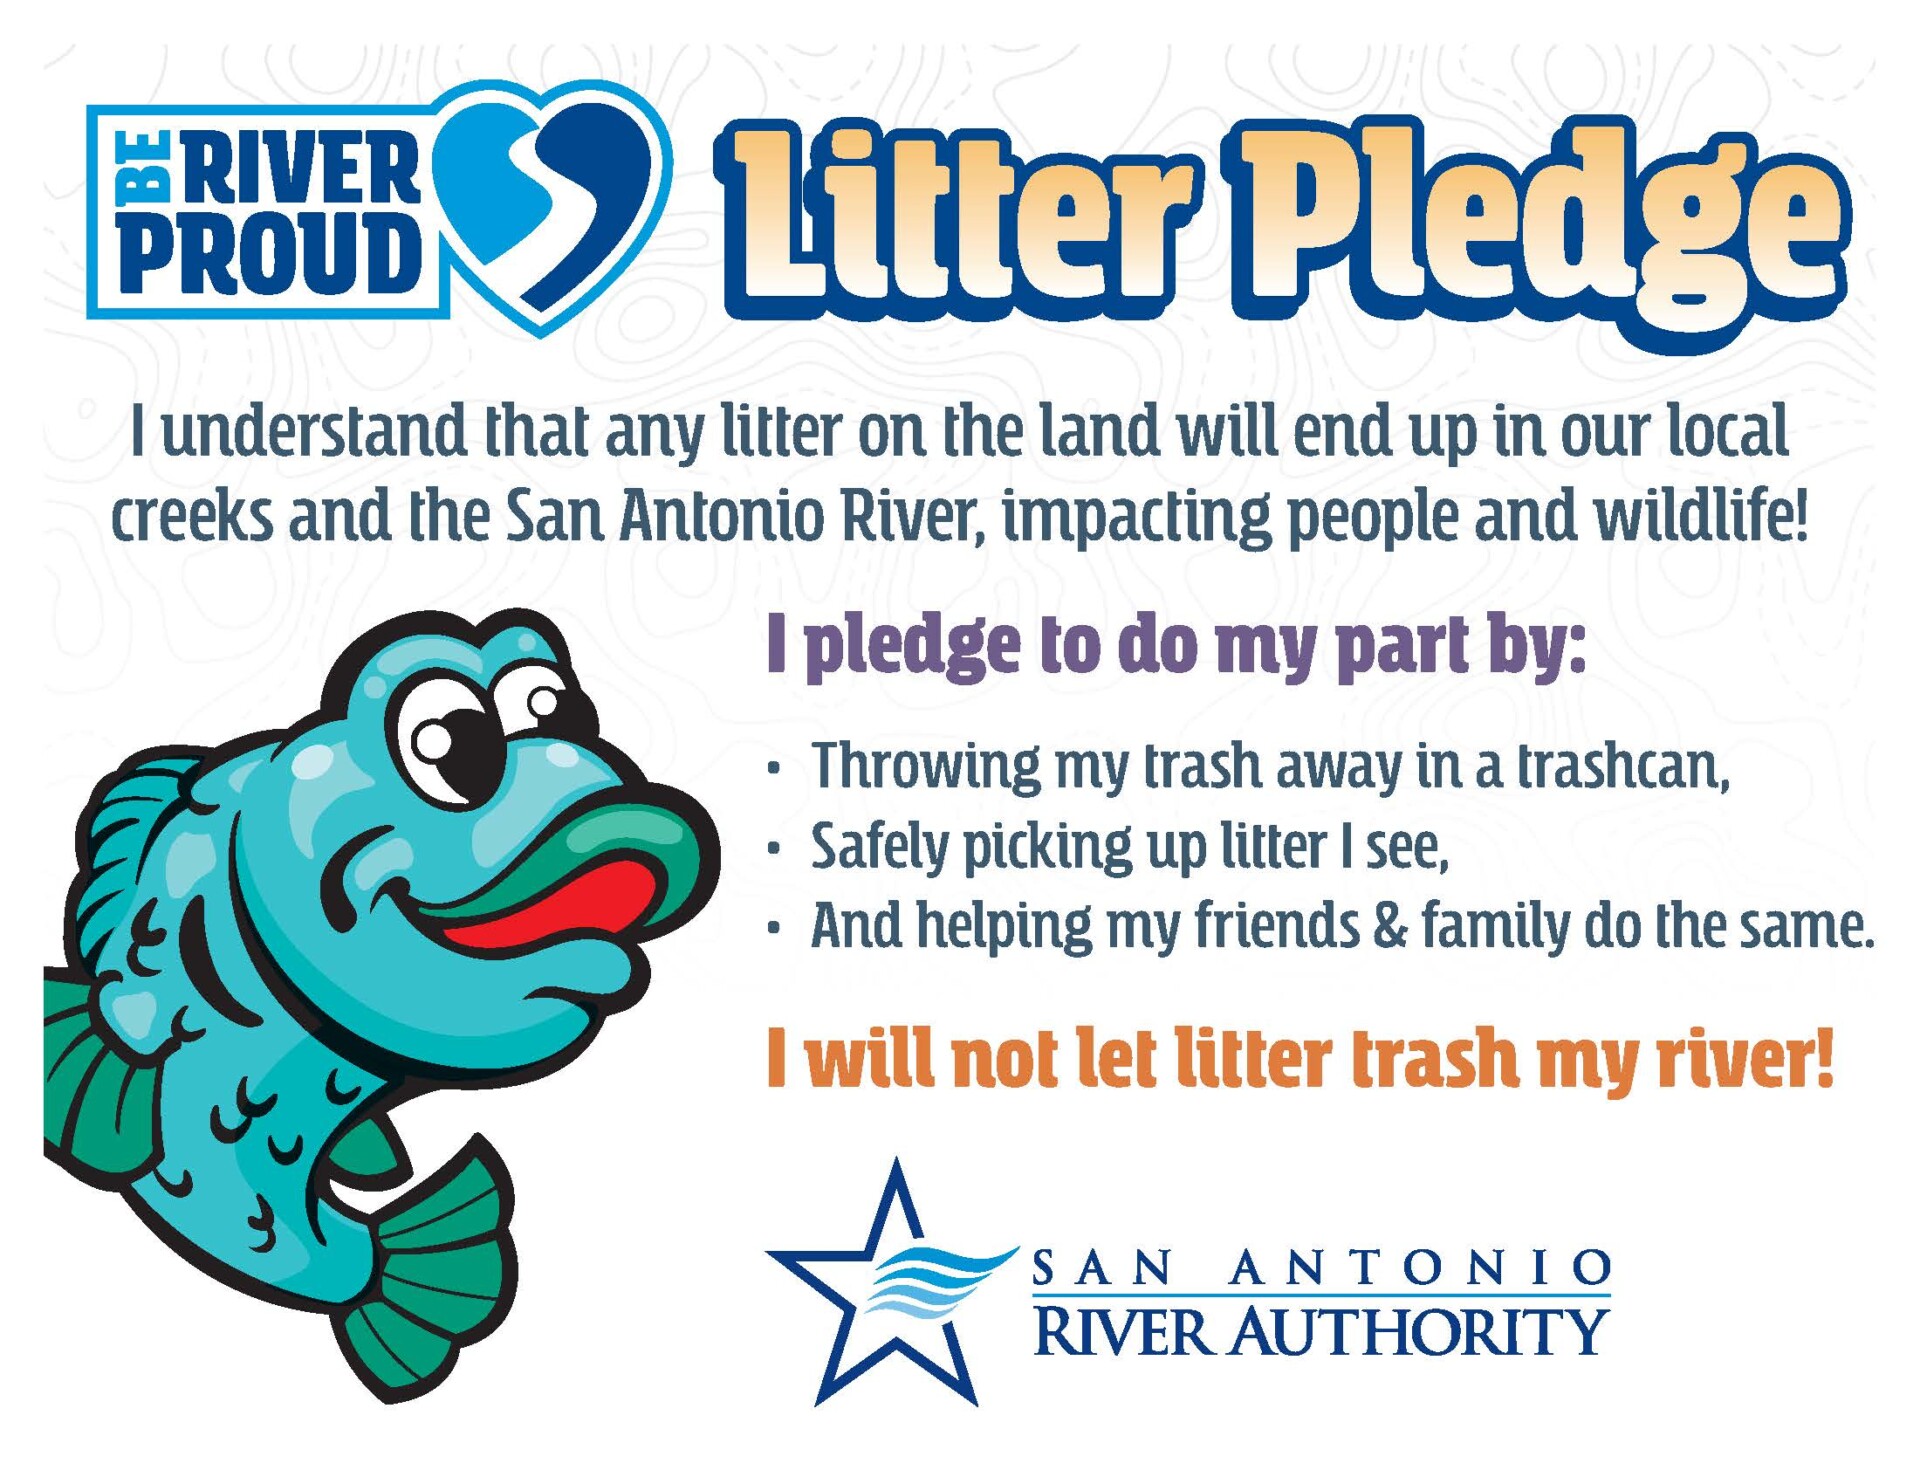 Little River Pledge